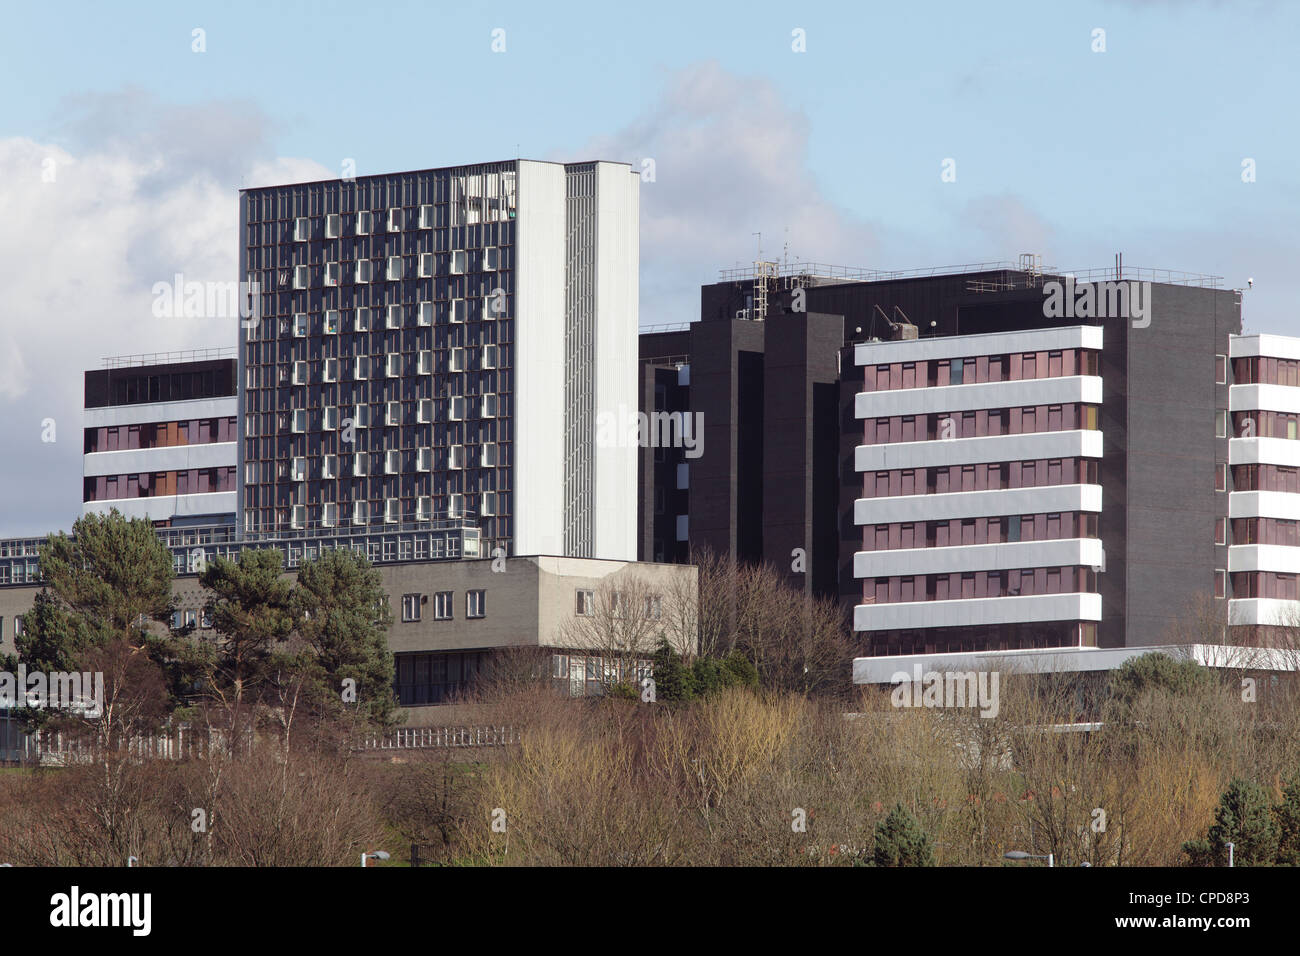 Das ehemalige Gebäude des Glasgow Royal Hospital for Sick Children in Yorkhill, Glasgow, Schottland, Großbritannien. Jetzt als West Glasgow Ambulatory Care im Einsatz. Stockfoto